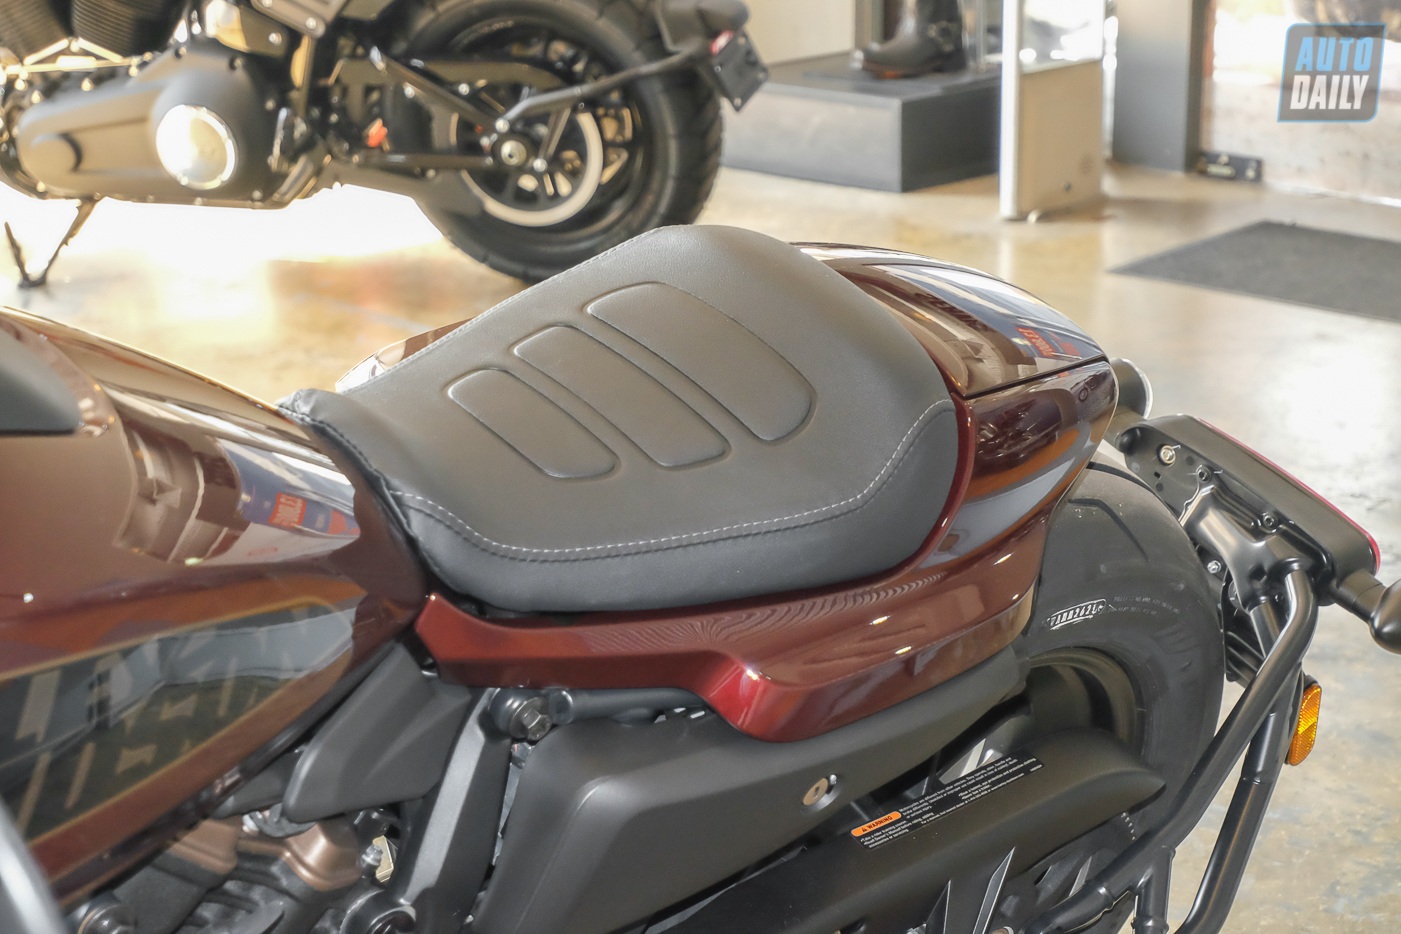 Cận cảnh Harley-Davidson Sportster S giá từ 589 triệu đồng tại Việt Nam Harley-Davidson Sportster S (15).jpg